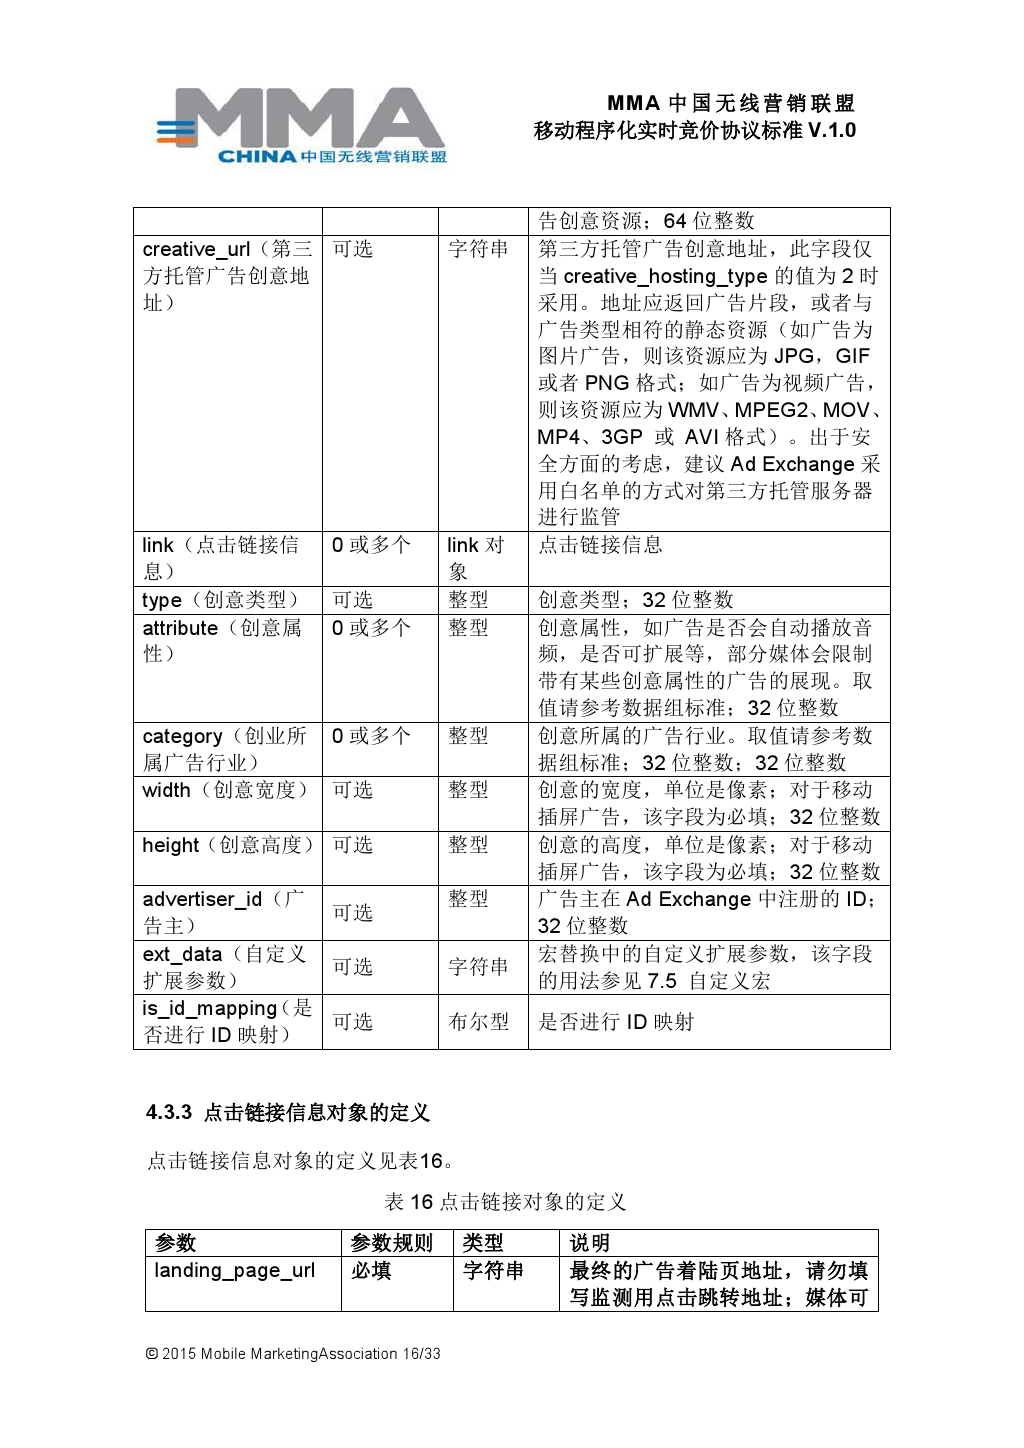 MMA中国无线营销联盟移动程序化实时竞价协议标准V.1.0_000017